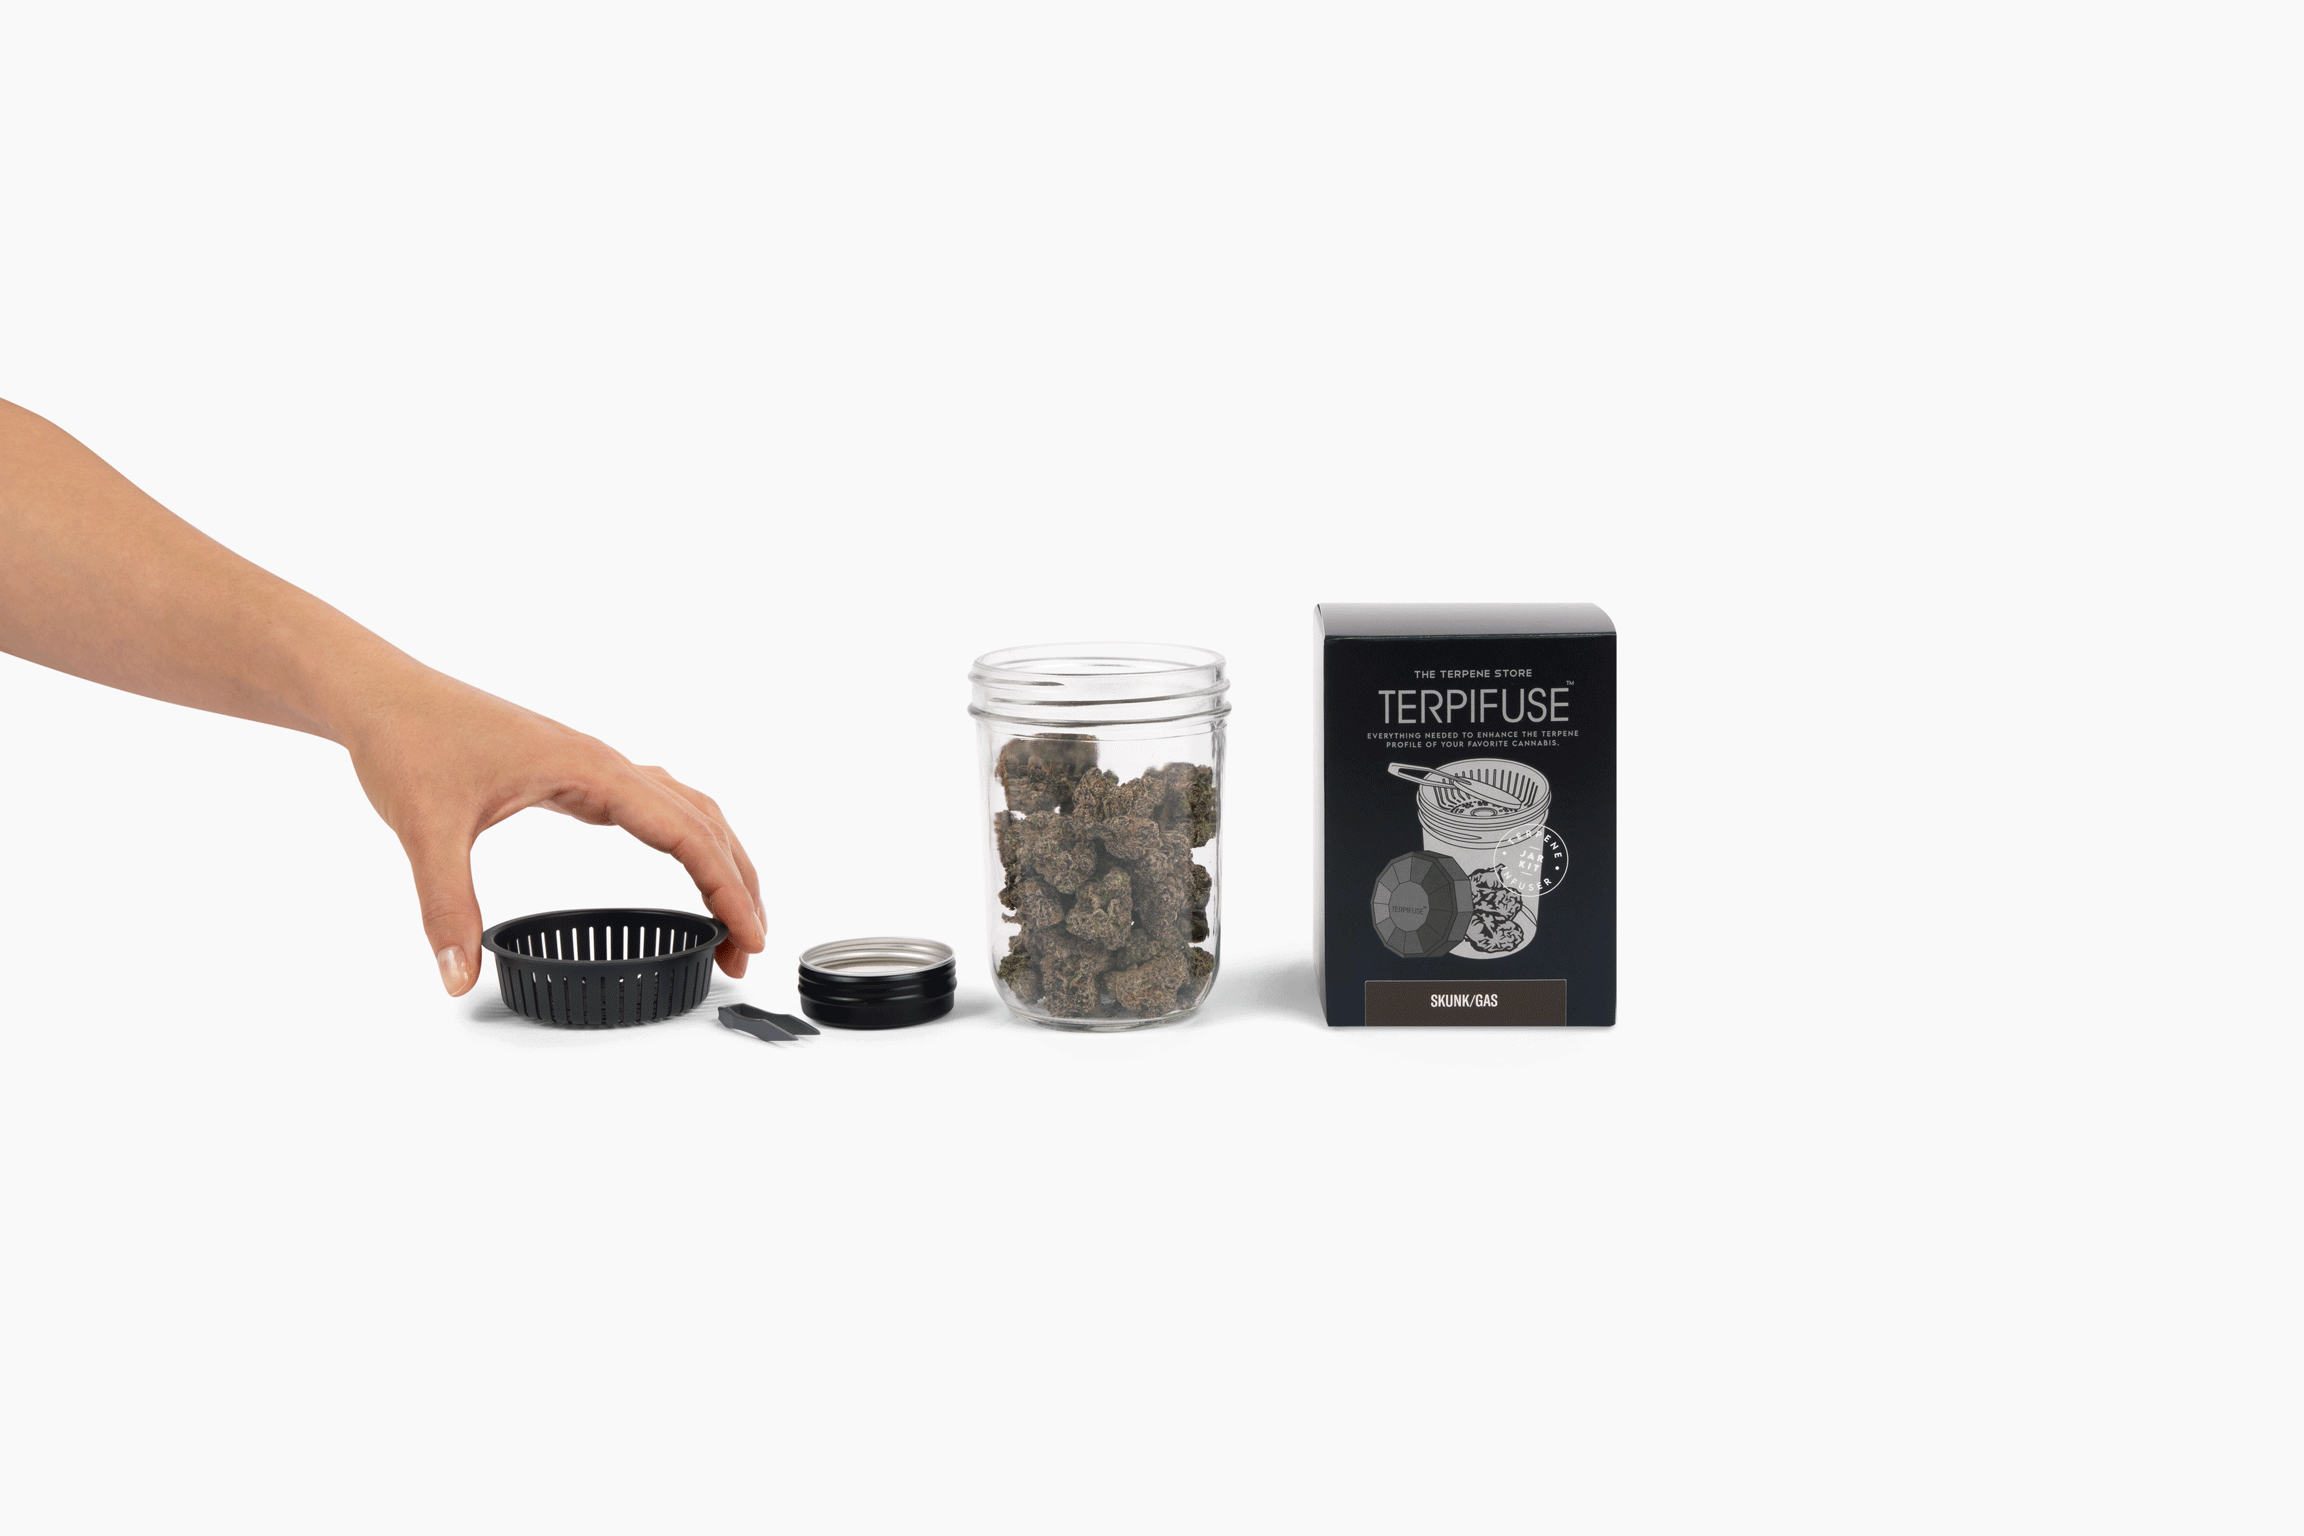 Russian Cream - Terpifuse Jar Kit